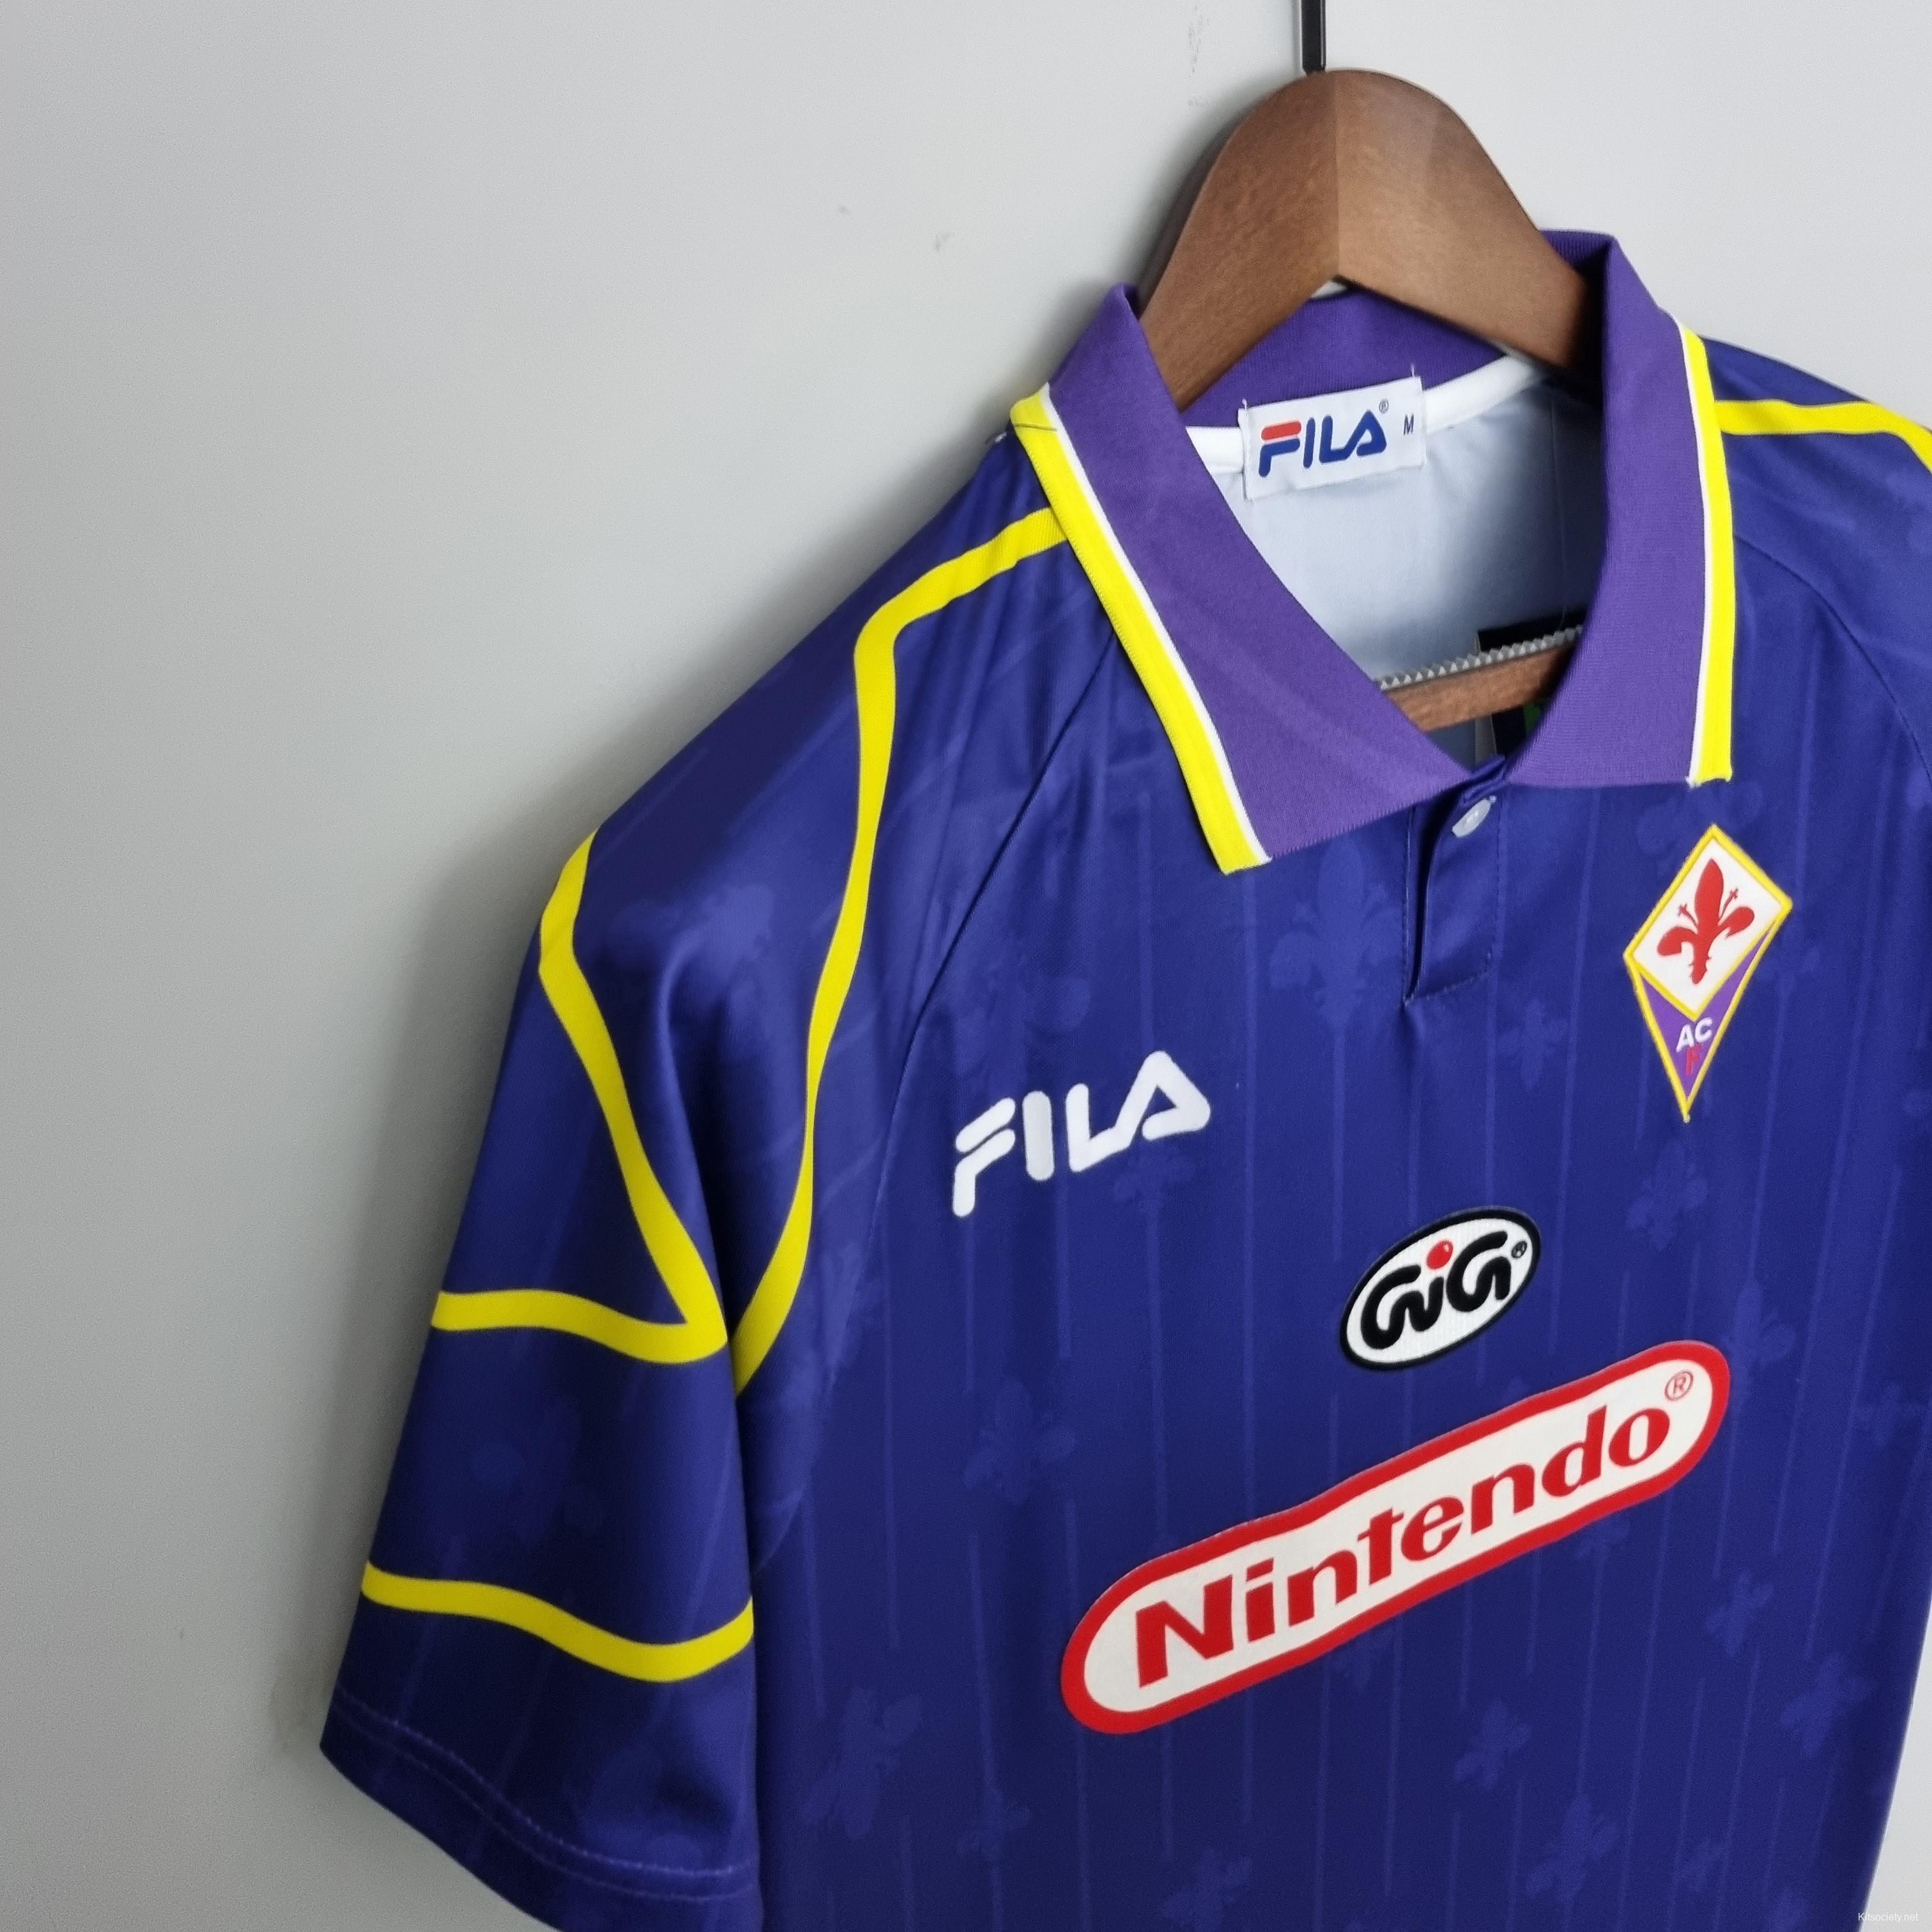 1997/98 Tottenham Hotspur Home Football Shirt / Classic Soccer Jersey